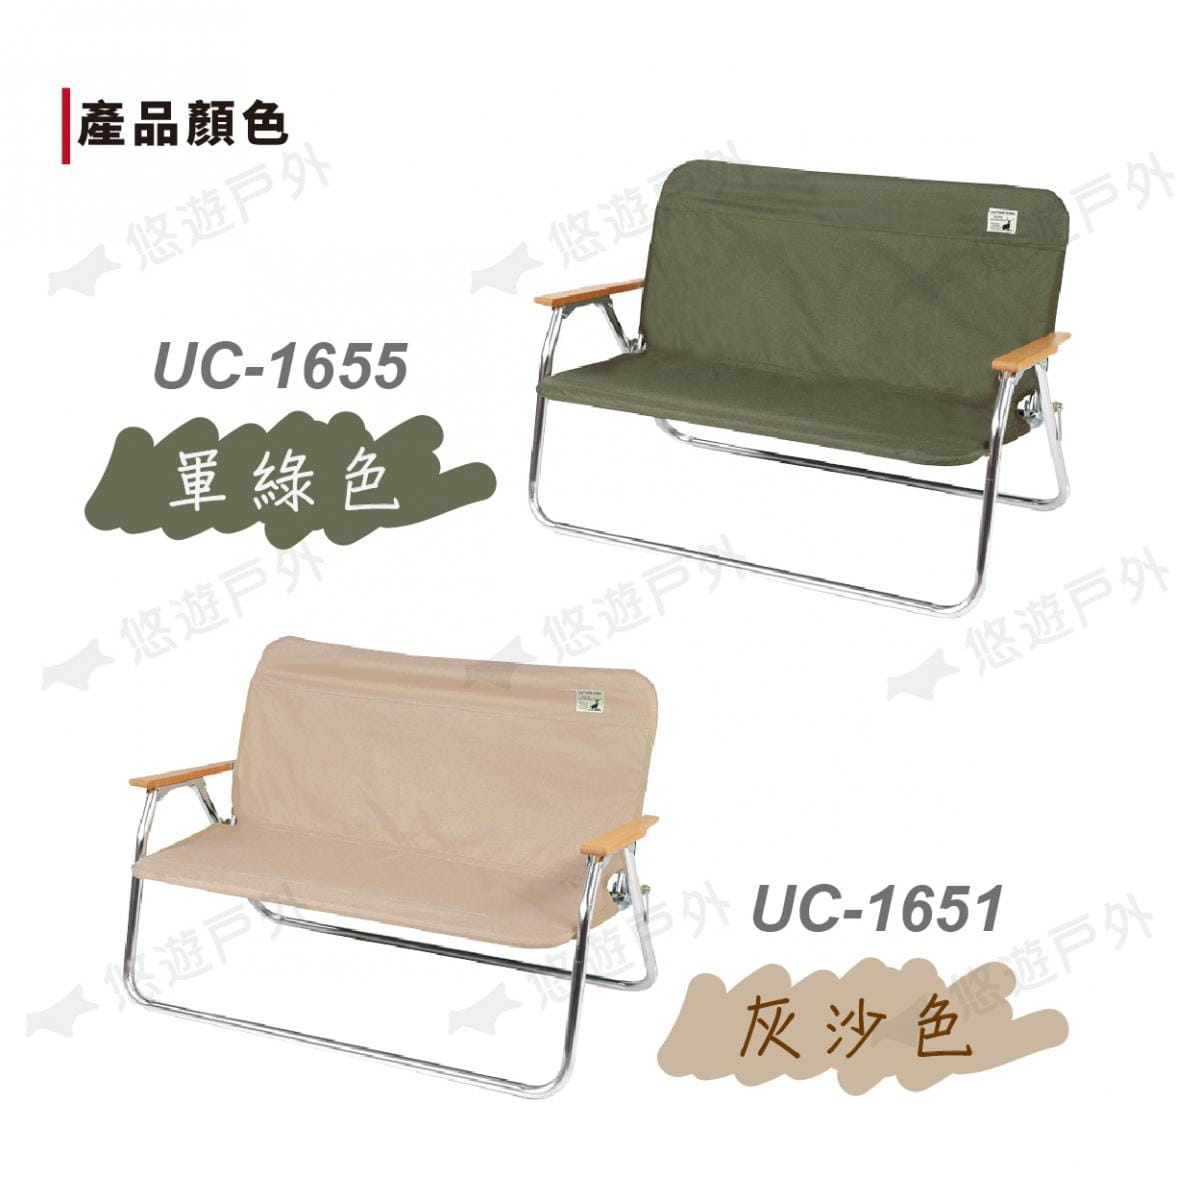 【日本鹿牌】鹿牌CS雙人椅套 UC-1651 UC-1655 灰沙色 軍綠色 椅套 坐墊 摺疊椅 3